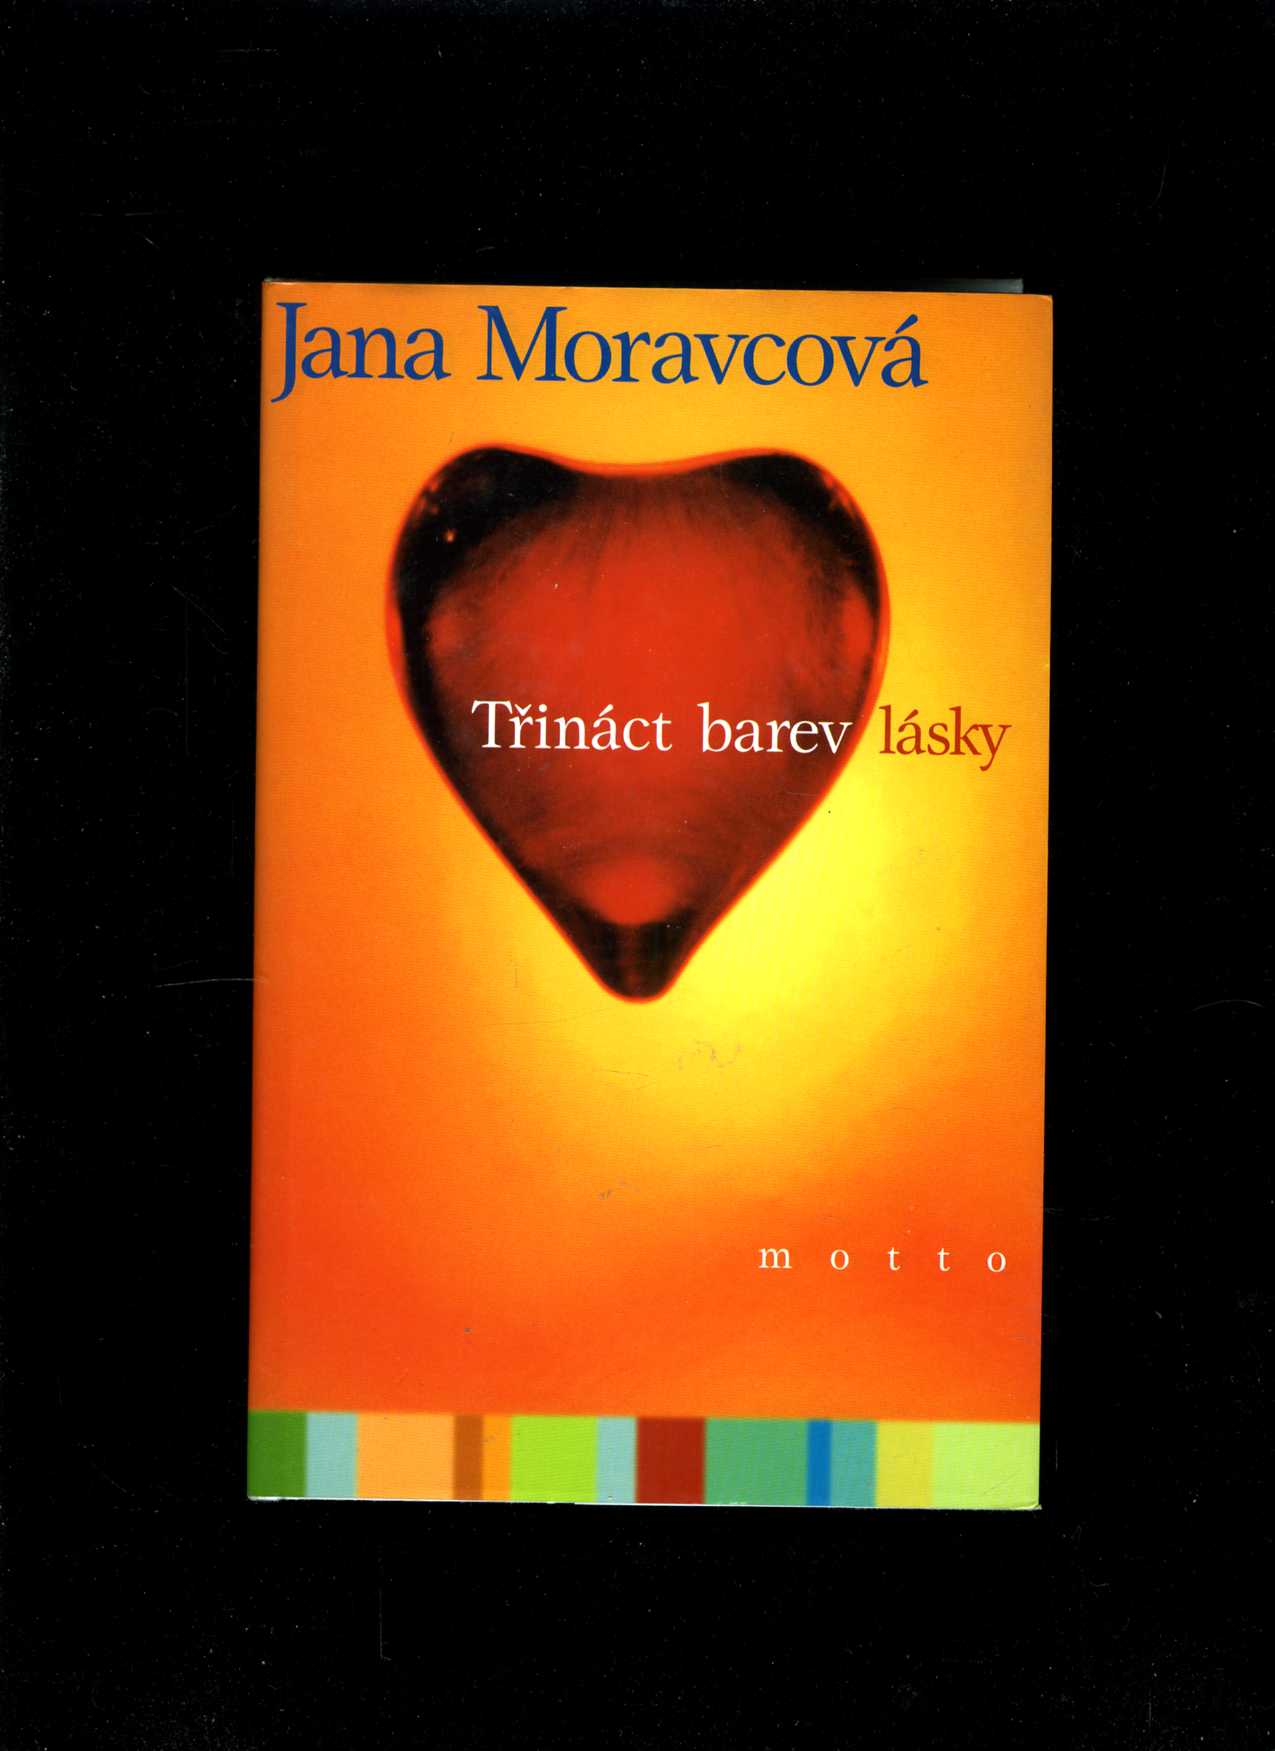 Třináct barev lásky (Jana Moravcová)